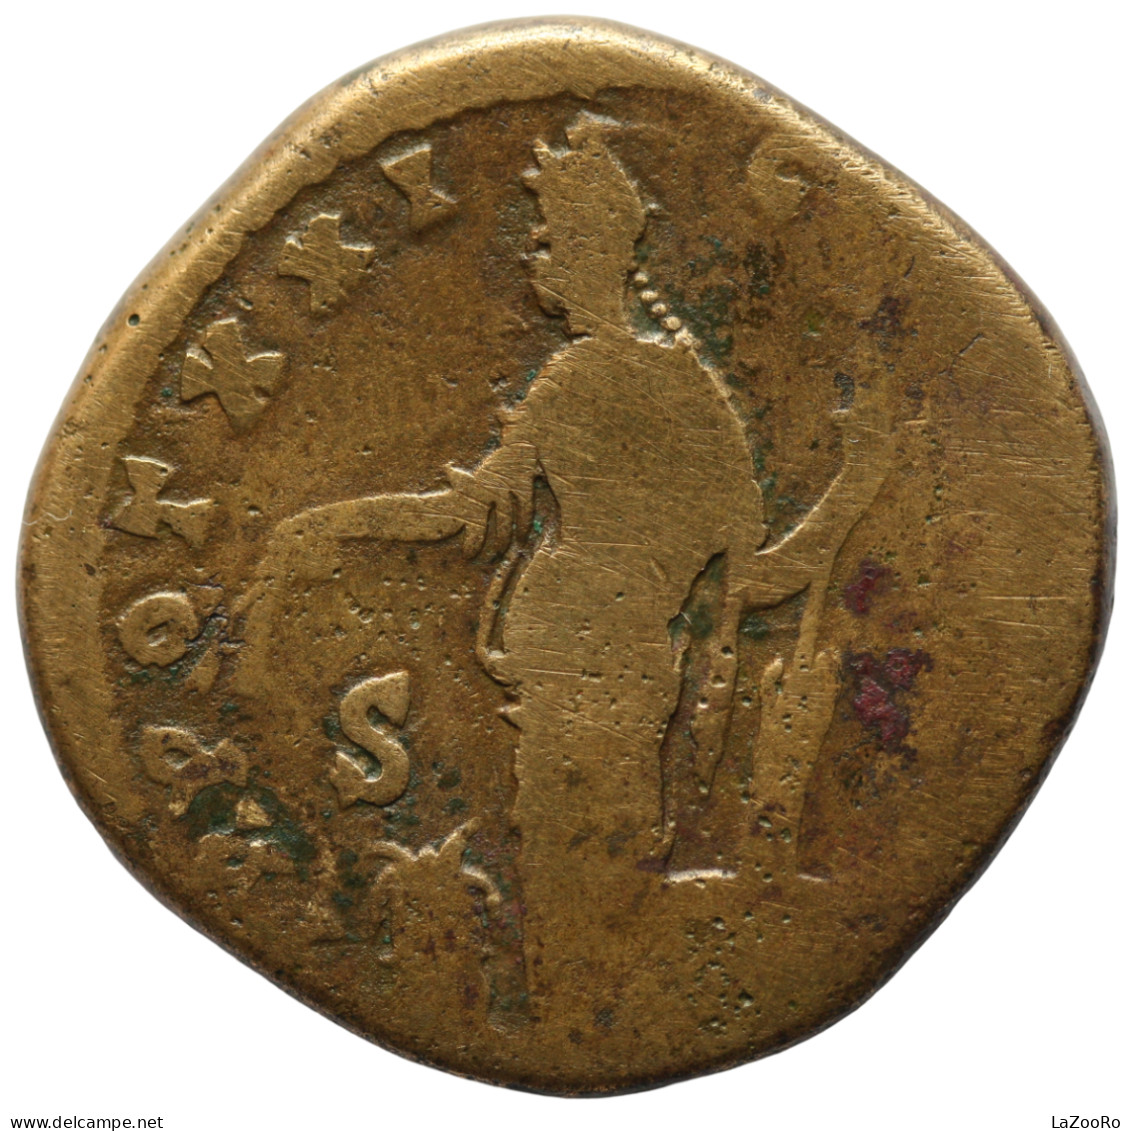 LaZooRo: Roman Empire - AE Sestertius Of Antoninus Pius (138 - 161 AD), Annona - La Dinastia Antonina (96 / 192)